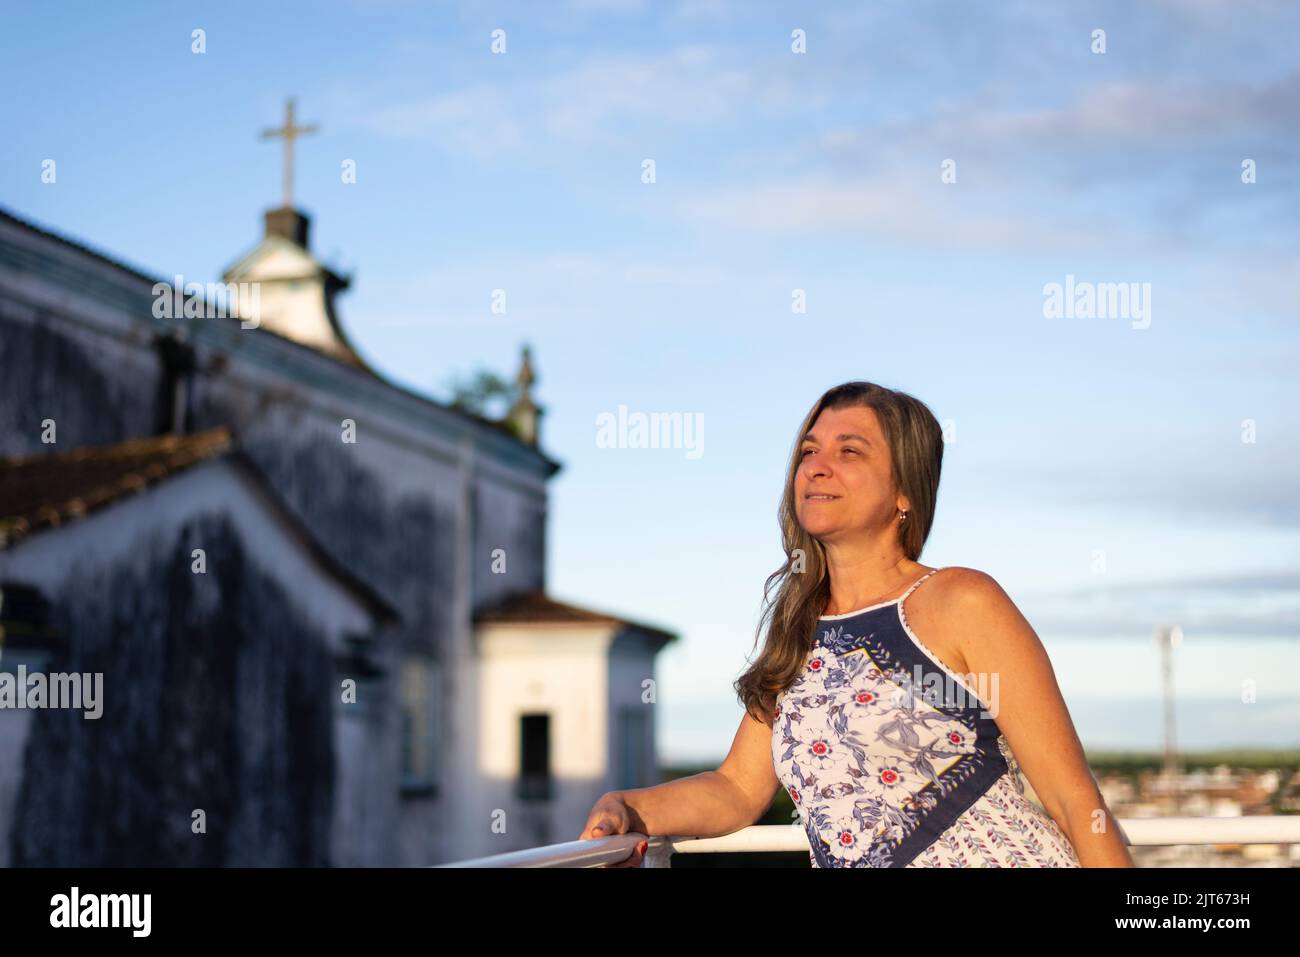 Eine Frau auf der Veranda ihres Hauses in hellen Kleidern blickt auf die Straße gegen den Himmel und die Kirche im Hintergrund. Stadt Valença, Bahia, Brasilien. Stockfoto